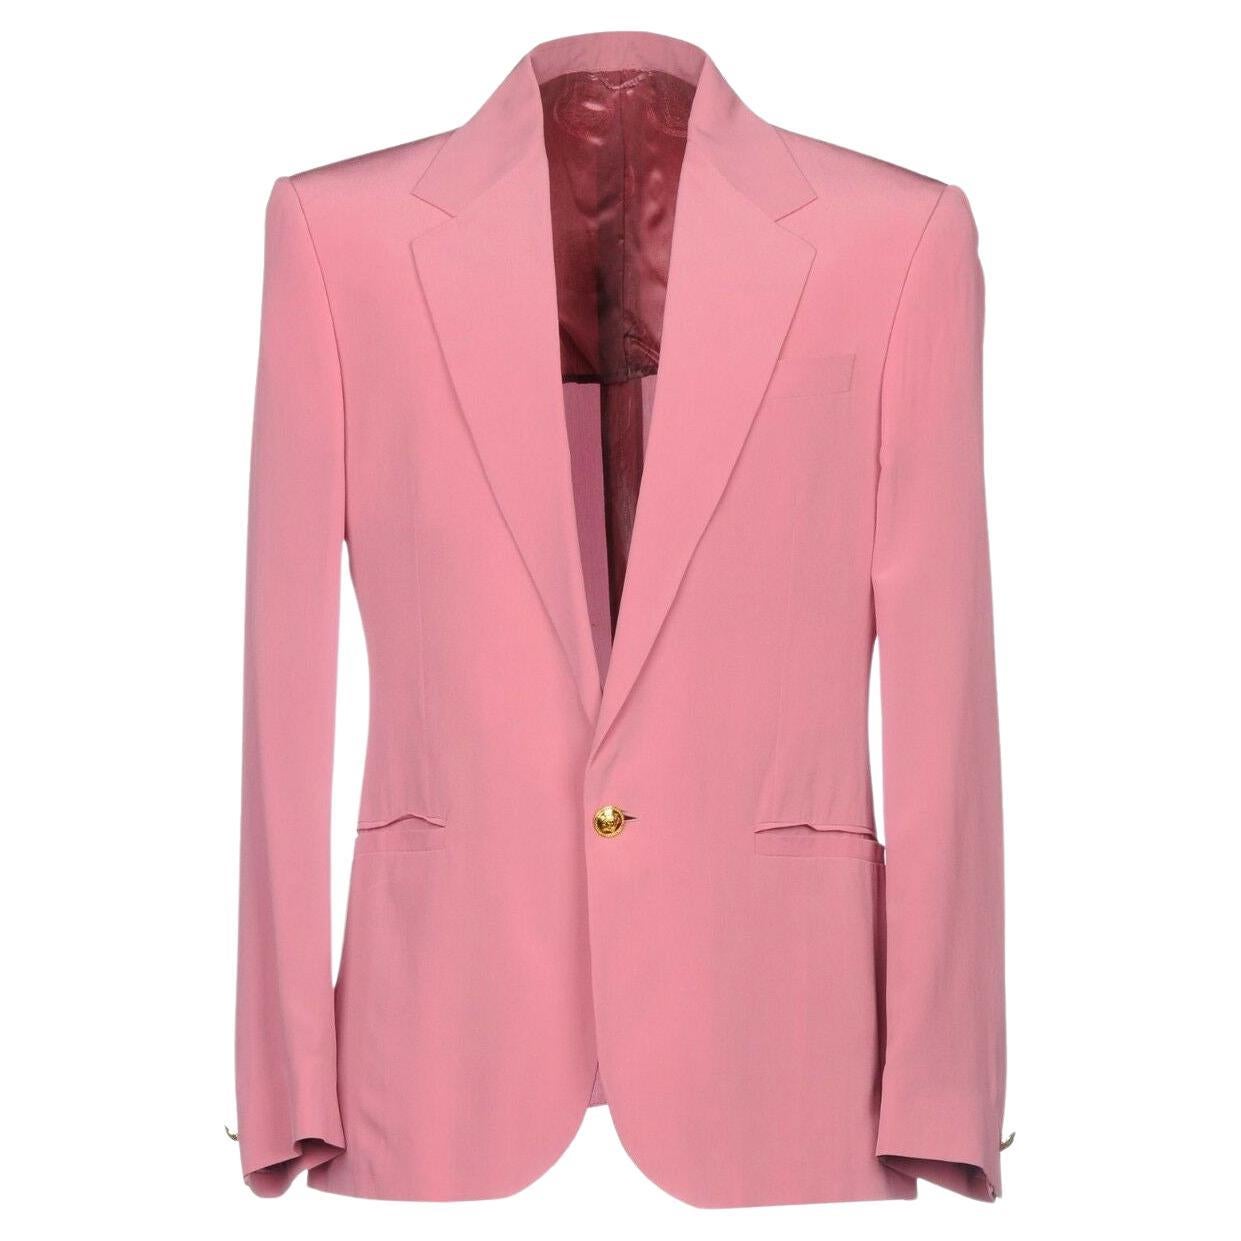 S/S 2015 look #1 VERSACE Pink 100% Silk Blazer Jacket 48 - 38